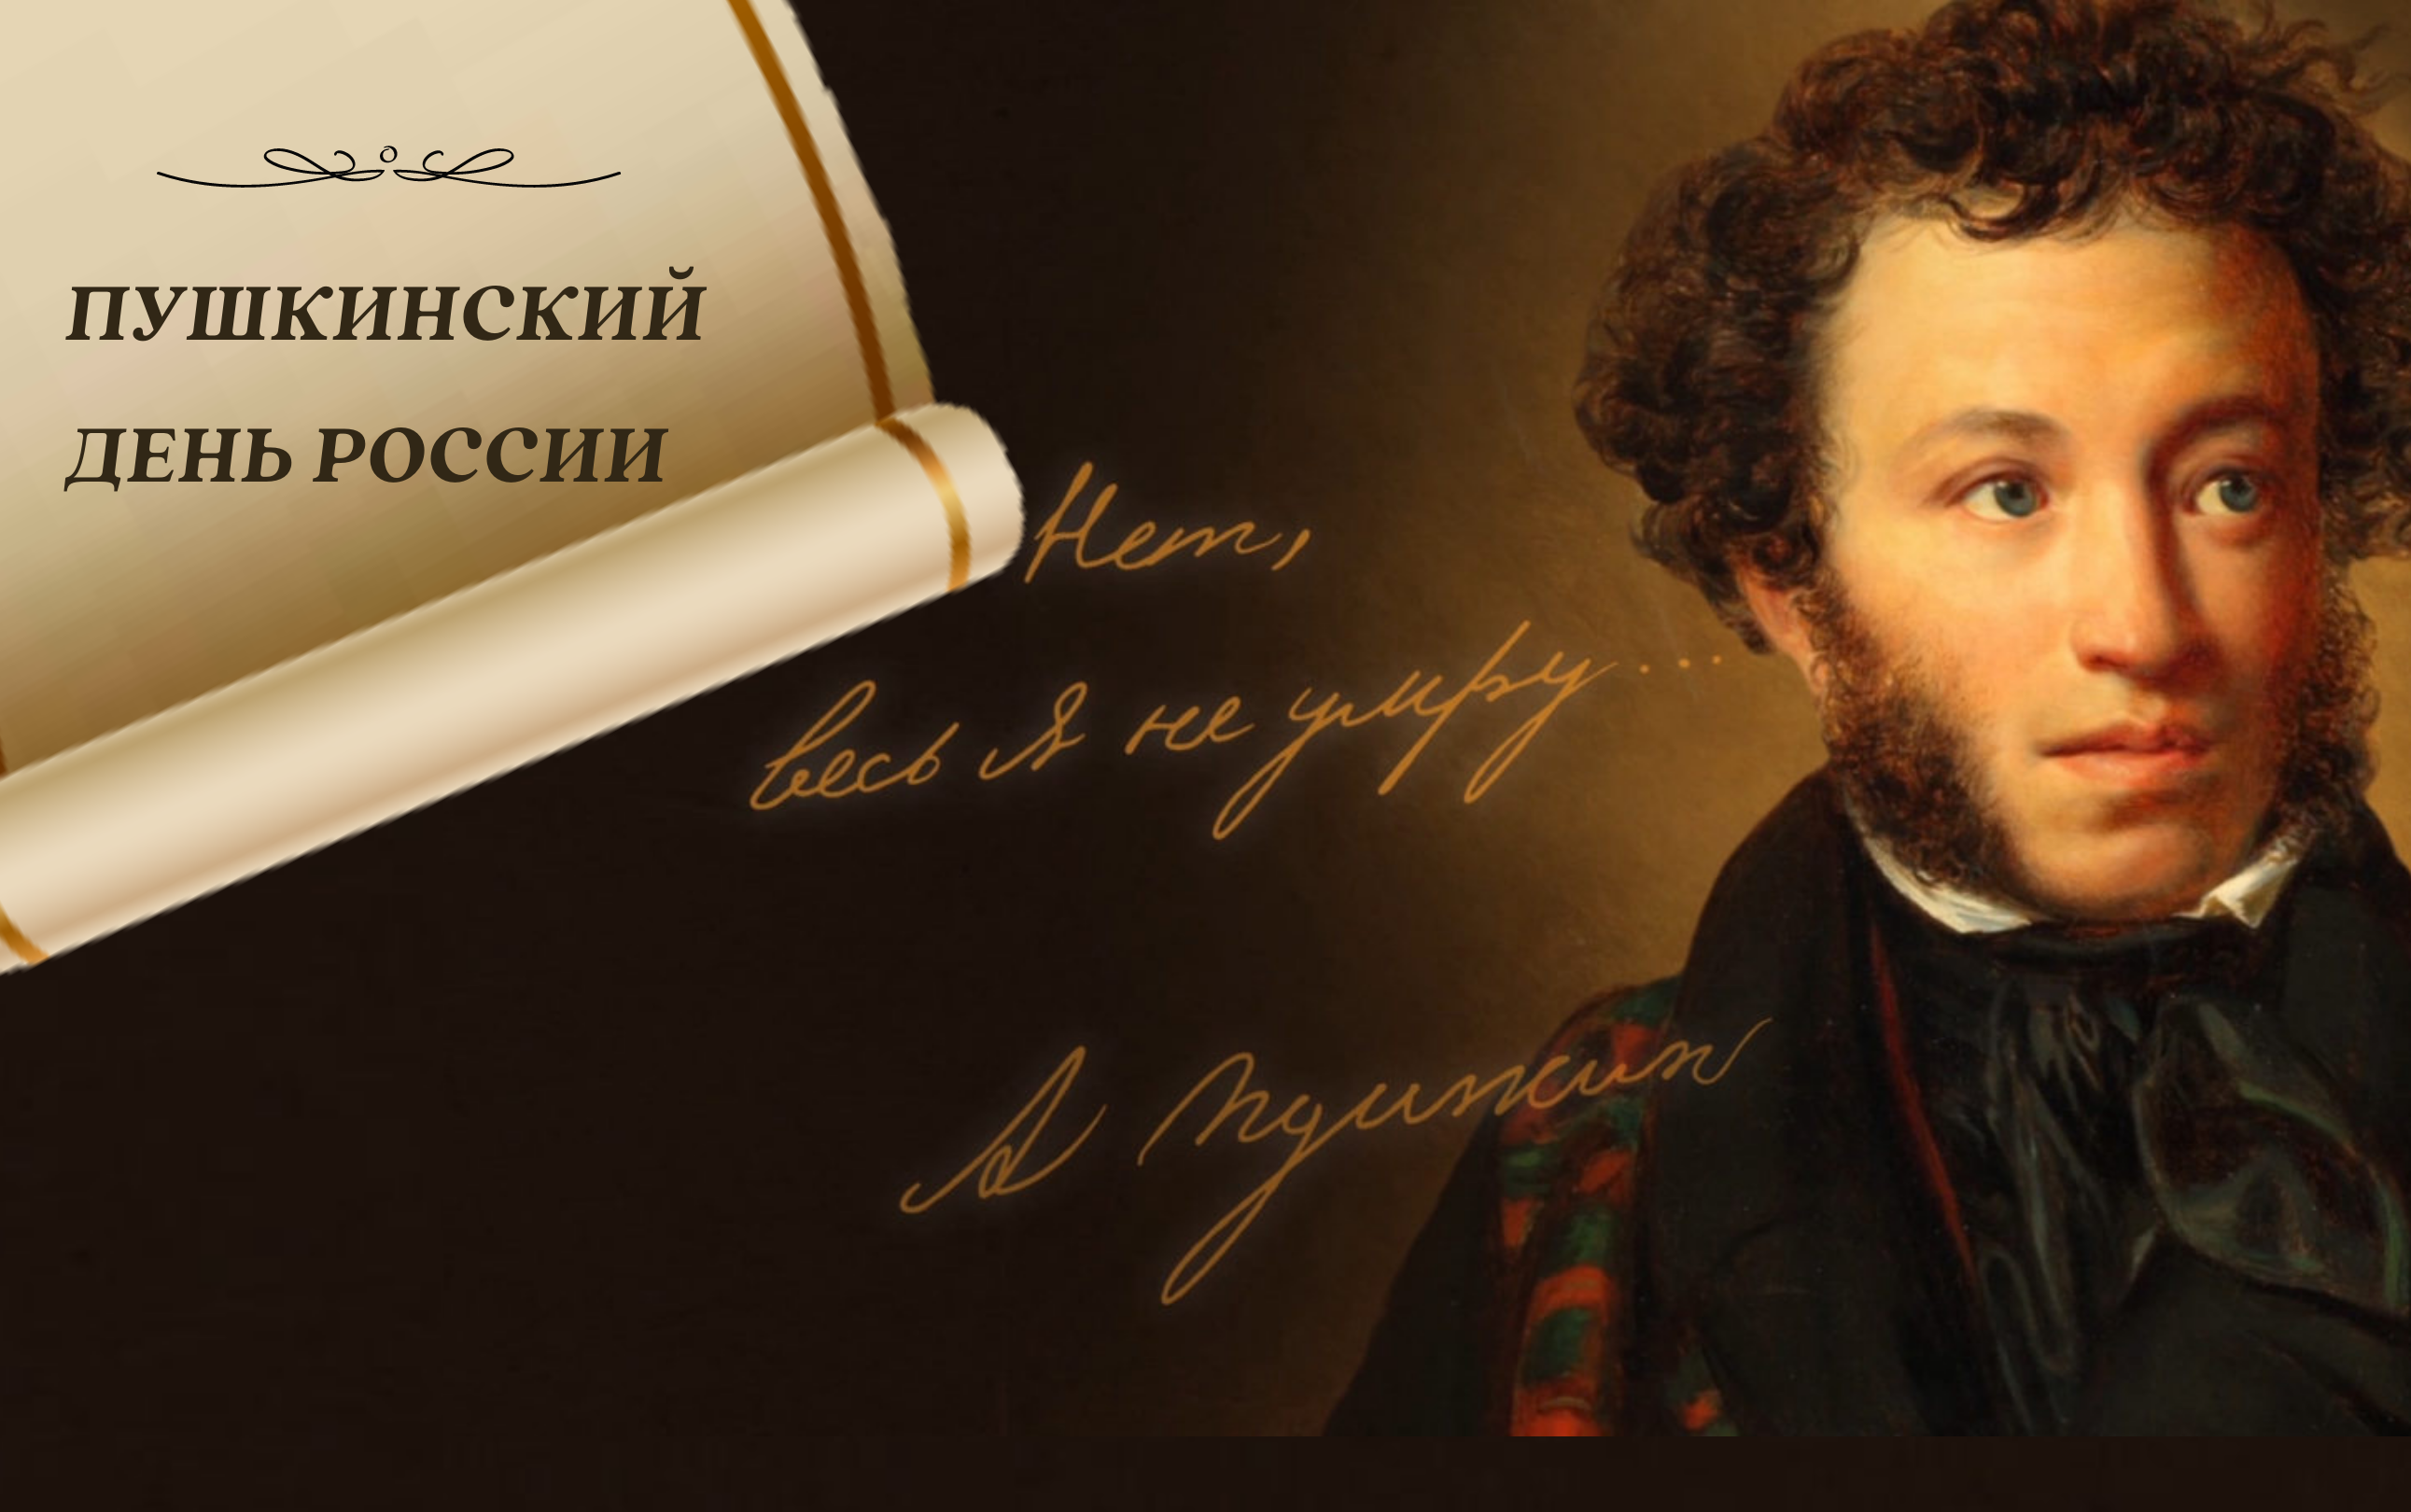 Пушкин 6 июня.